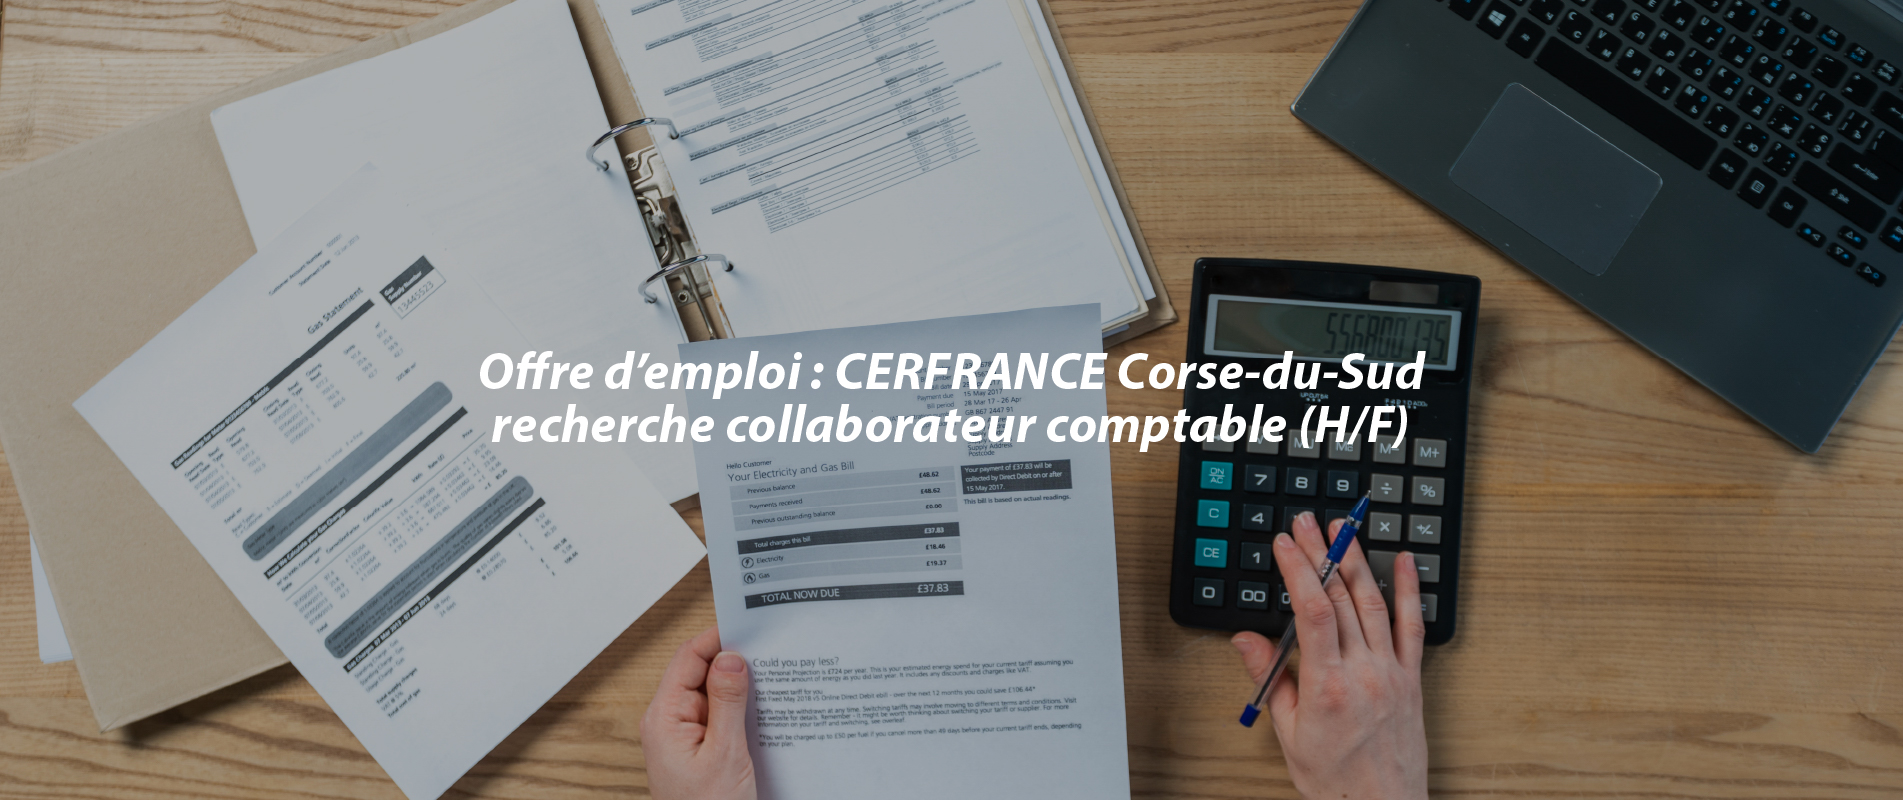 Offre d’emploi : CERFRANCE Corse-du-Sud recherche collaborateur comptable (H/F)